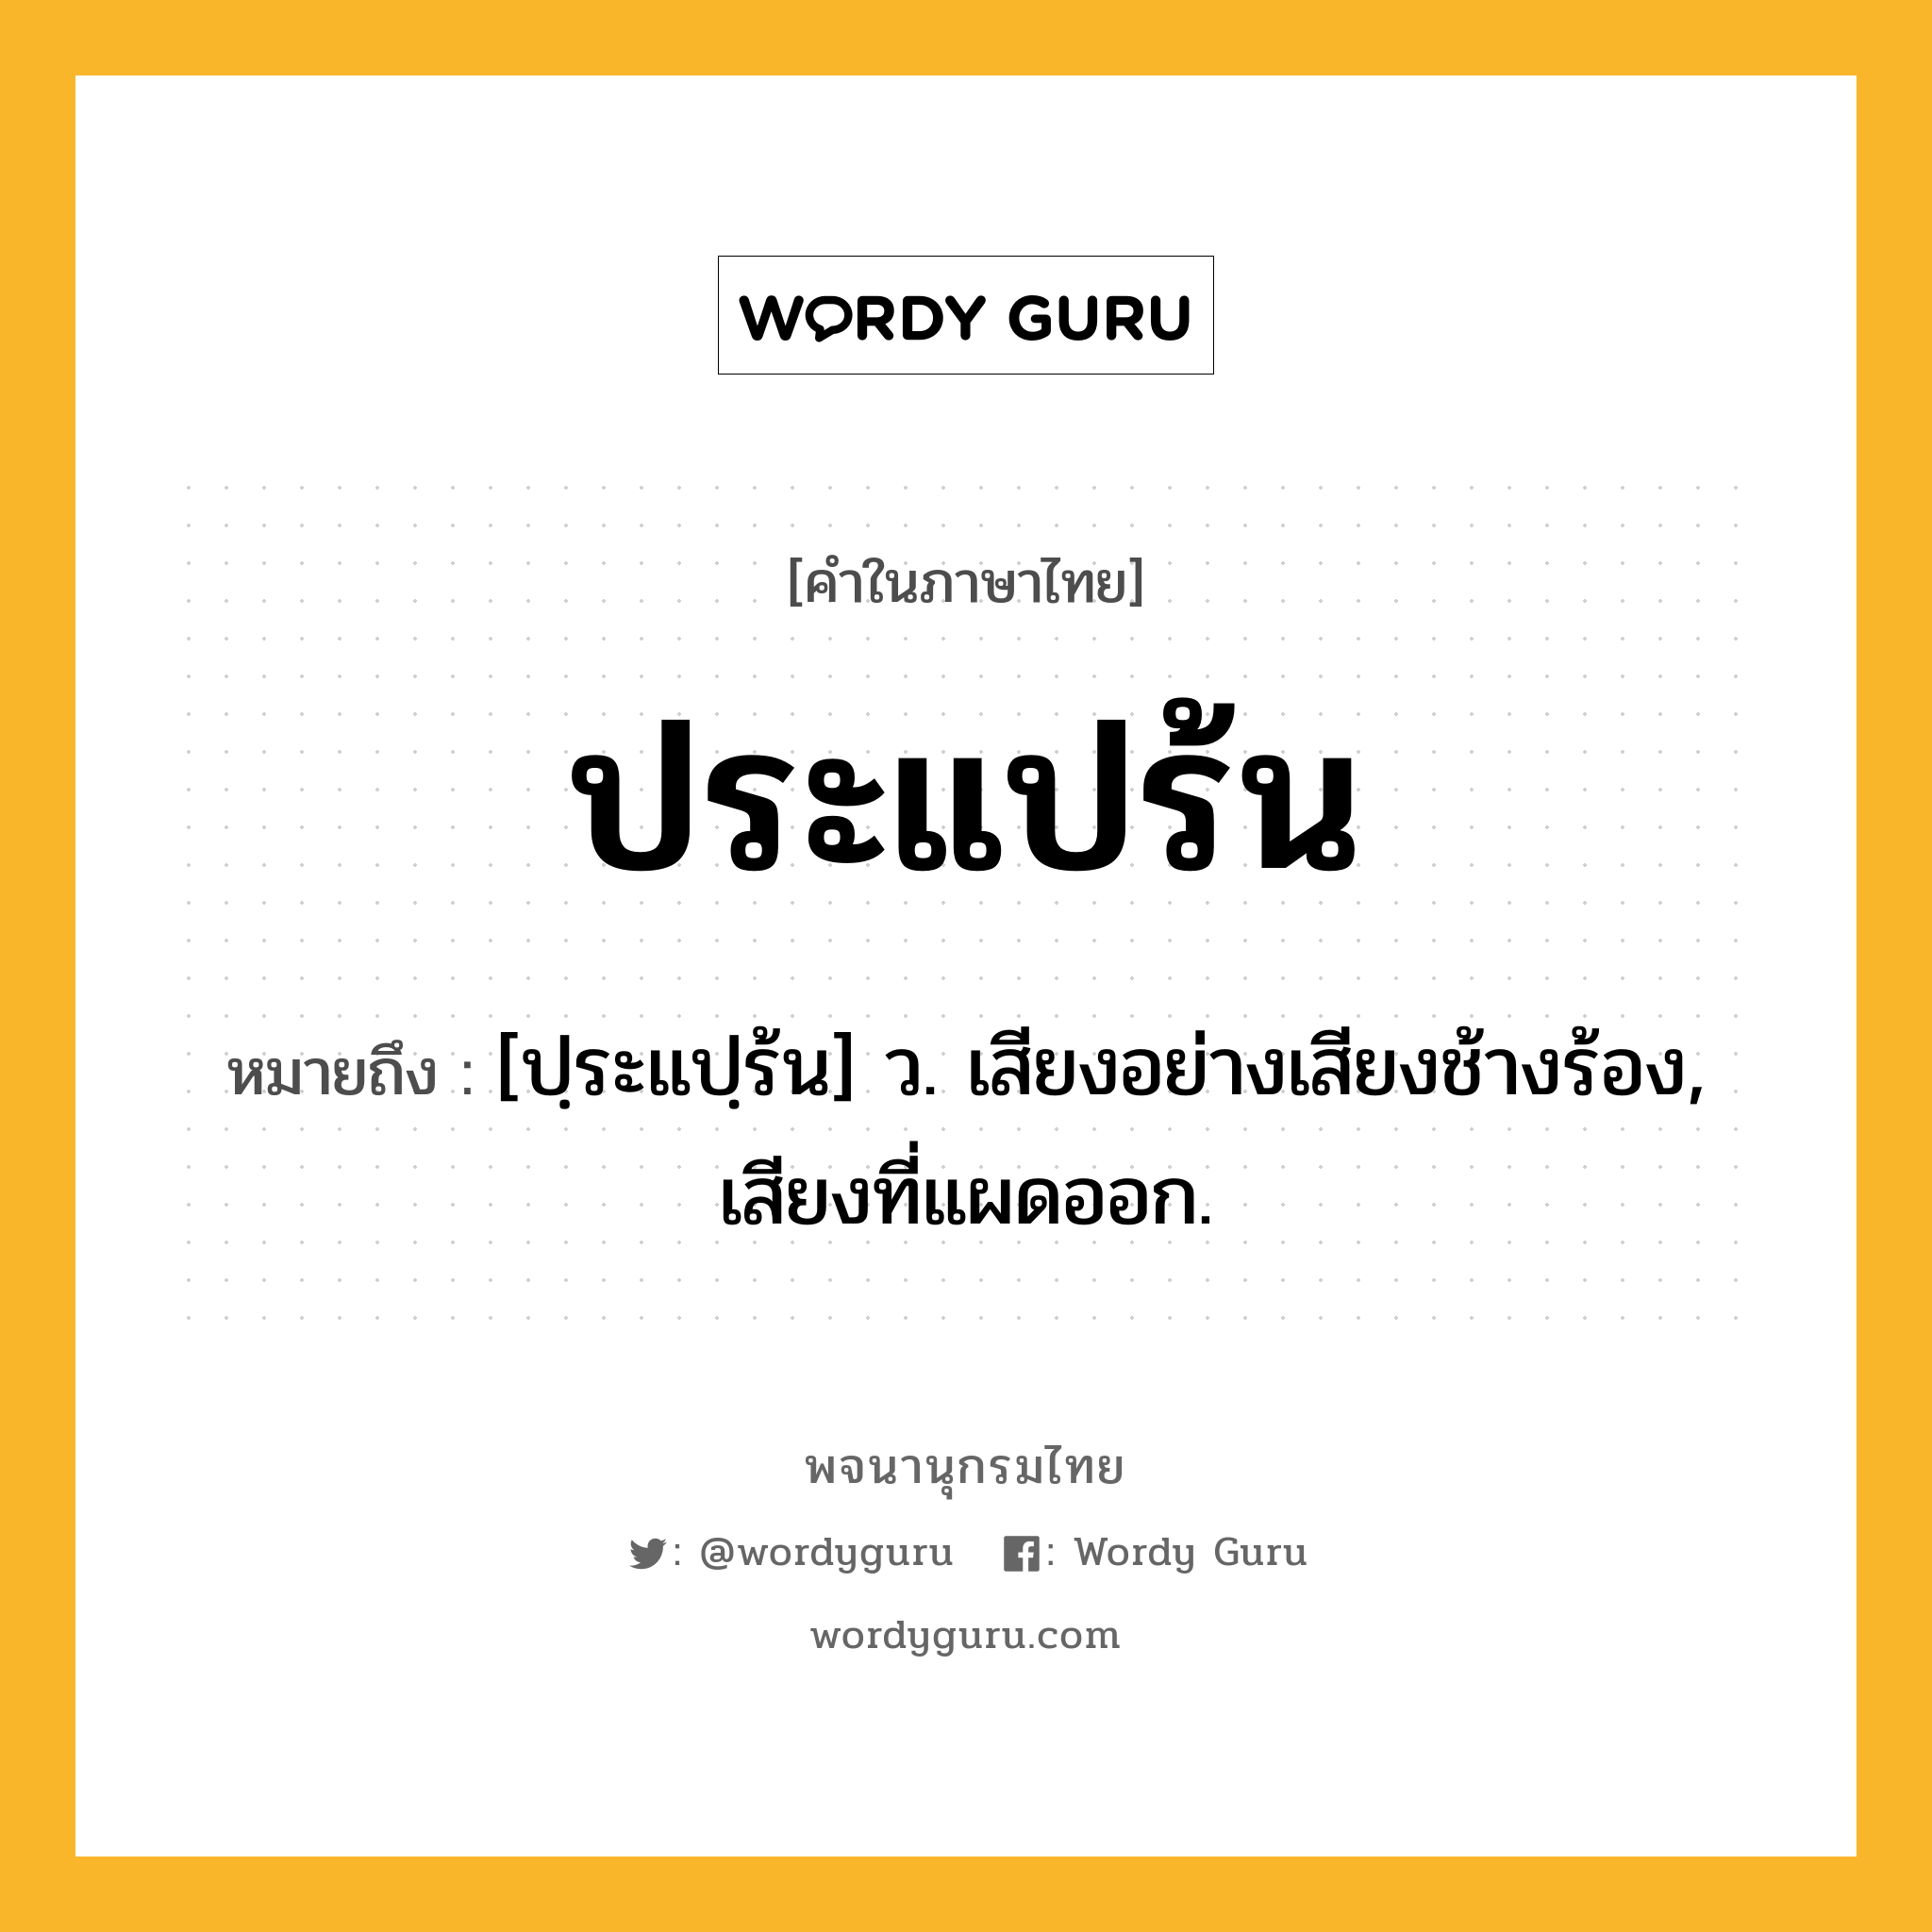 ประแปร้น หมายถึงอะไร?, คำในภาษาไทย ประแปร้น หมายถึง [ปฺระแปฺร้น] ว. เสียงอย่างเสียงช้างร้อง, เสียงที่แผดออก.